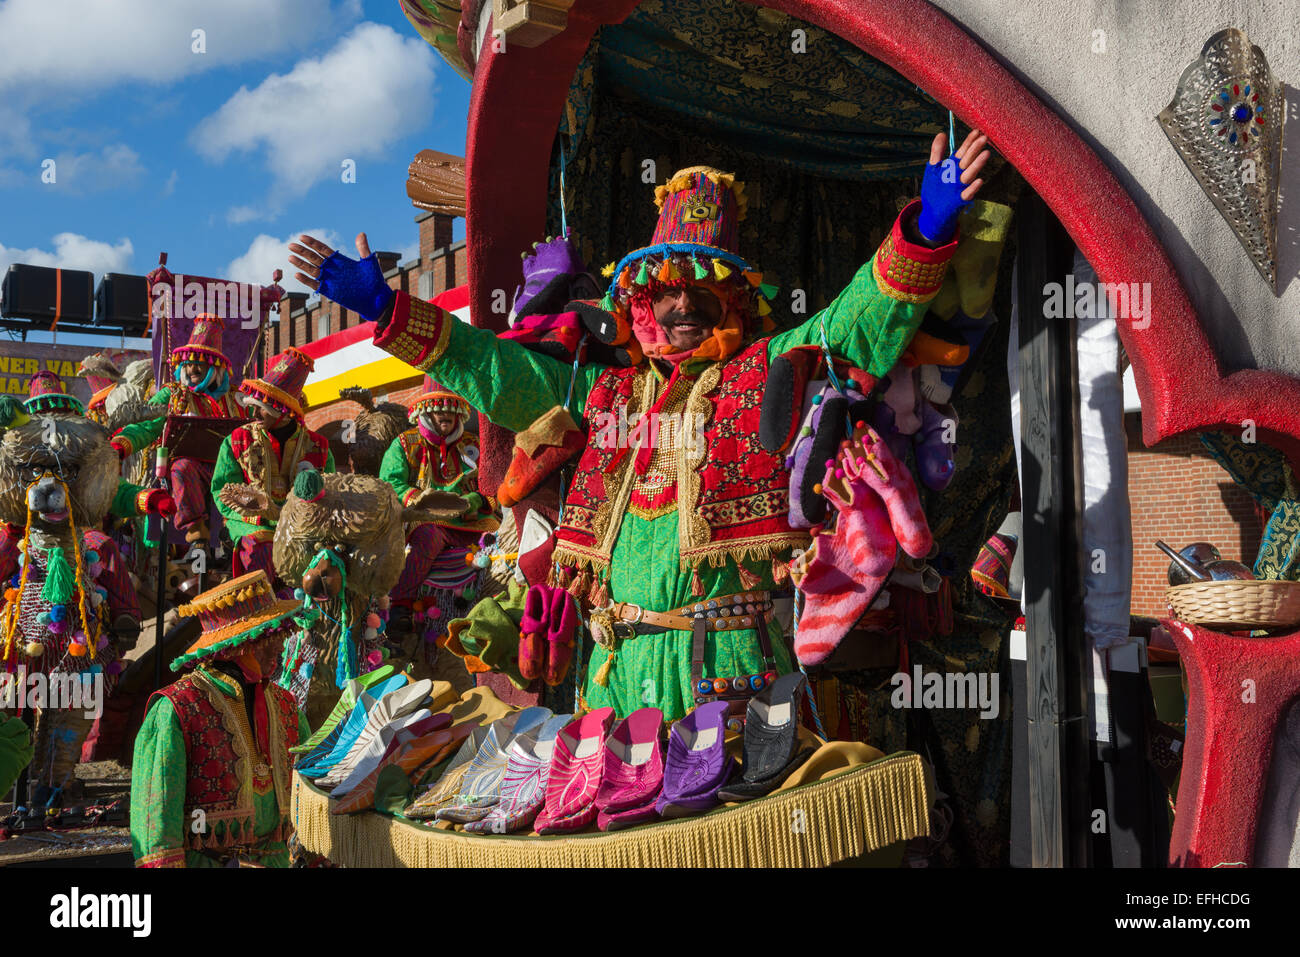 Flotteur carnaval montrant des caricatures racistes des Commerçants Marocains à l'offensive traditionnellement Aalst Carnival procession, Carnival Lundi, Aalst, Belgique Banque D'Images